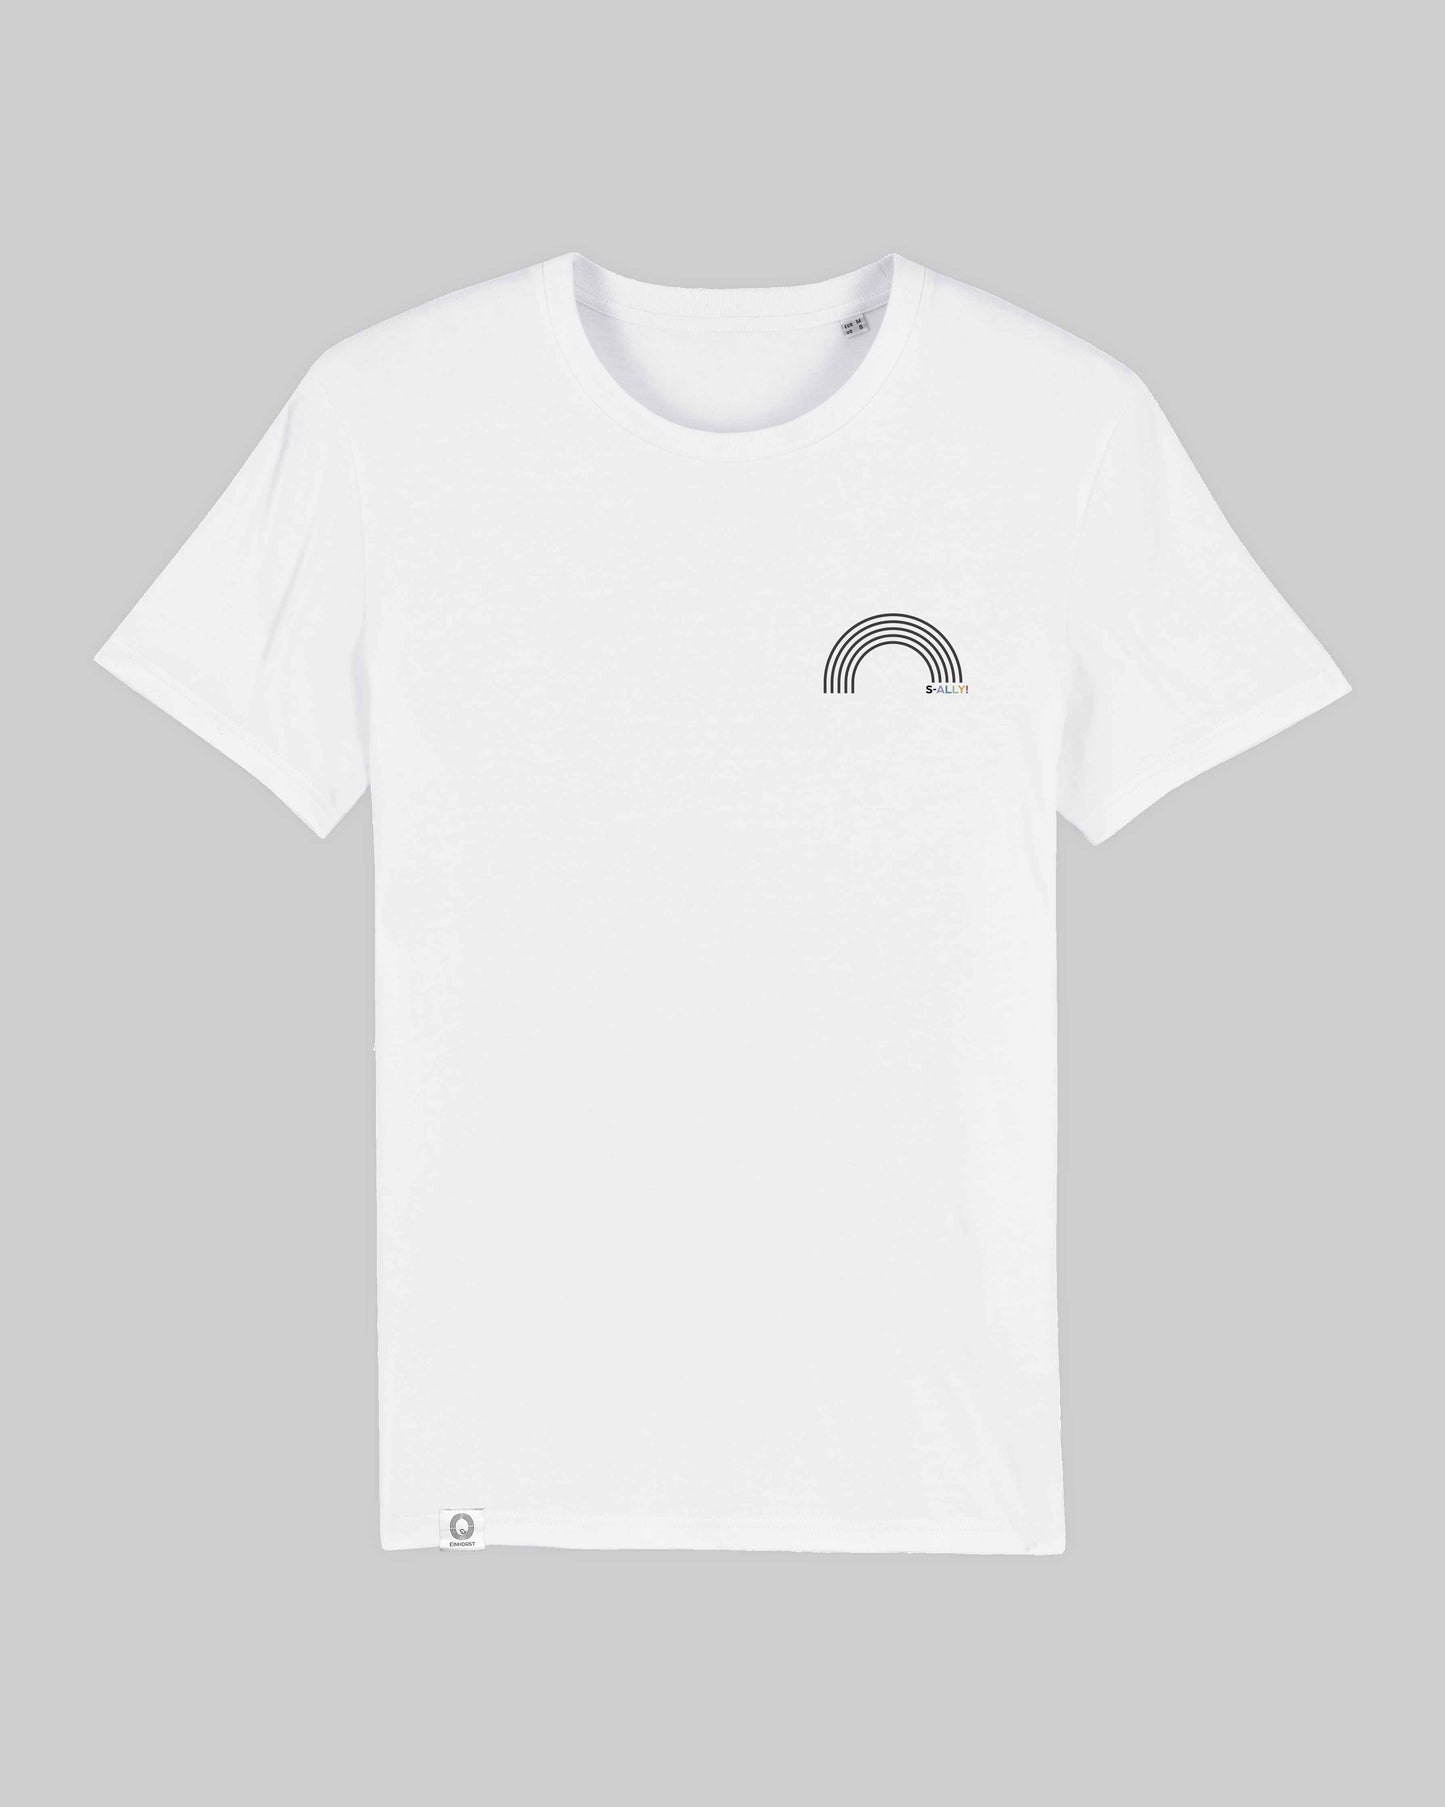 EINHORST® unisex Organic Shirt in Weiß mit dem Motiv "s-ally Regenbogen" in der Kombination schwarzer Regenbogen mit bunter Schrift, Bild von Shirt von vorne